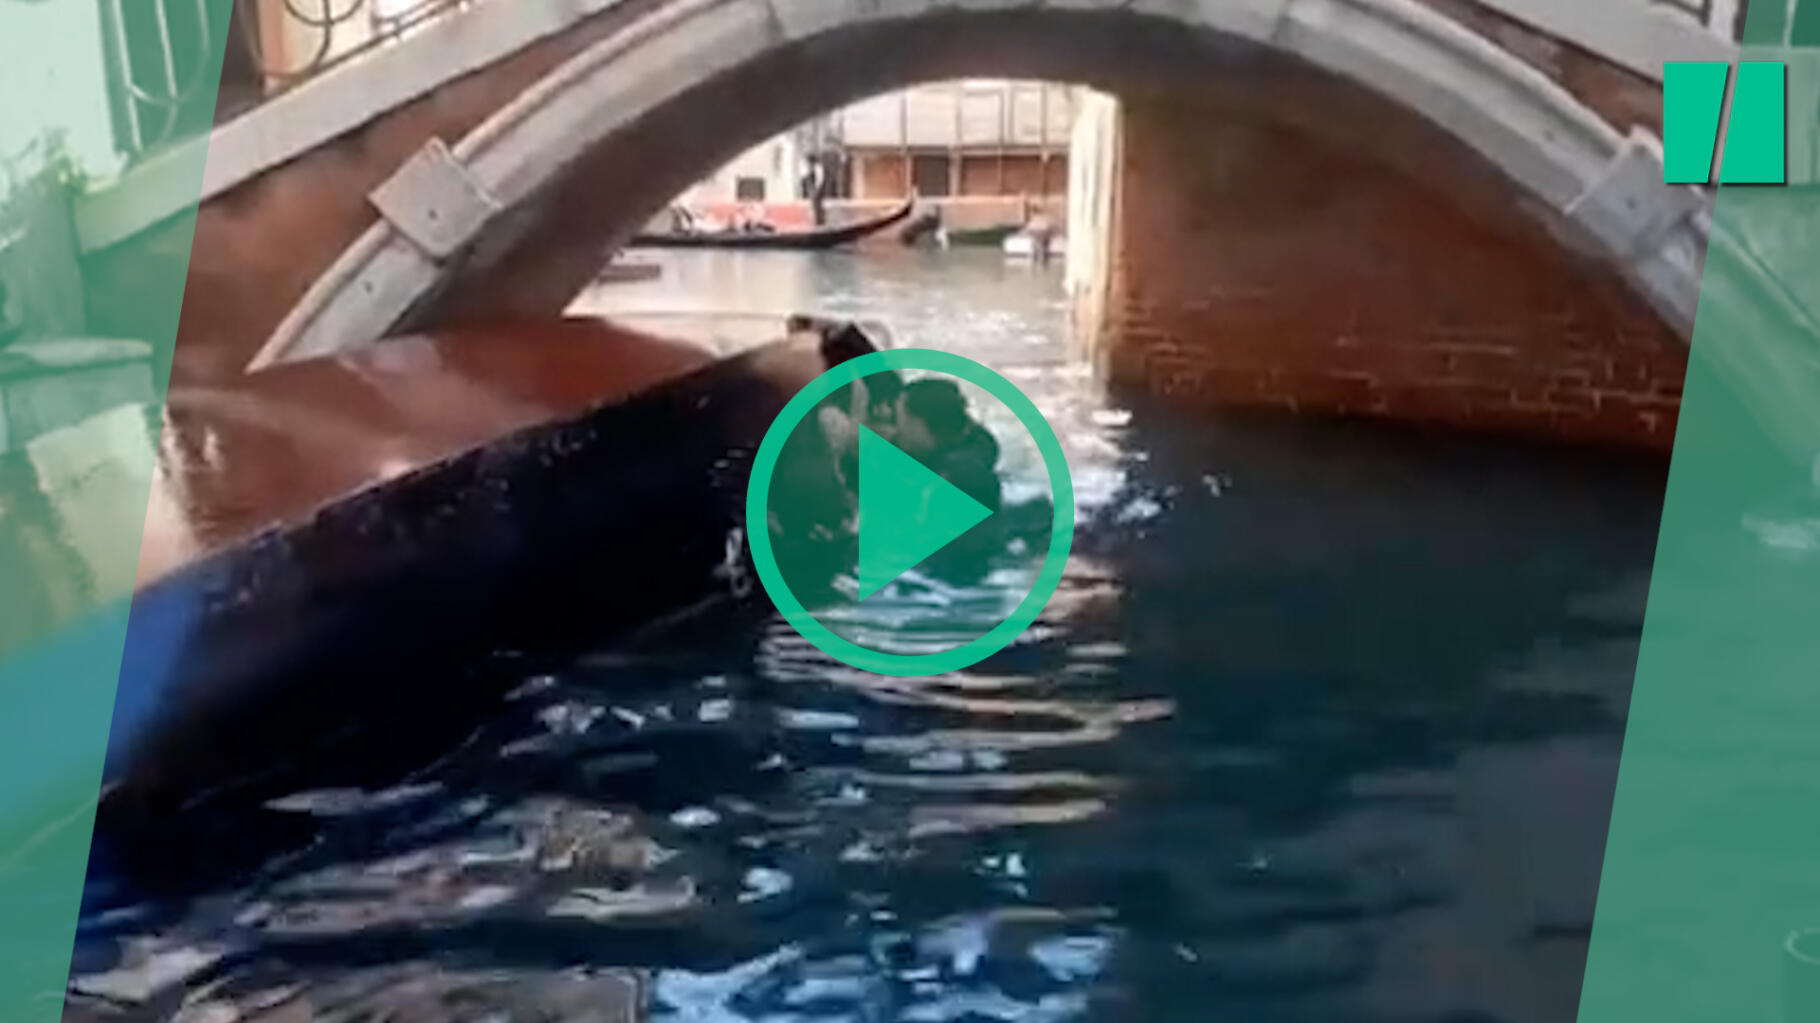 In Venetië kantelde de gondel omdat deze toeristen de perfecte selfie wilden maken